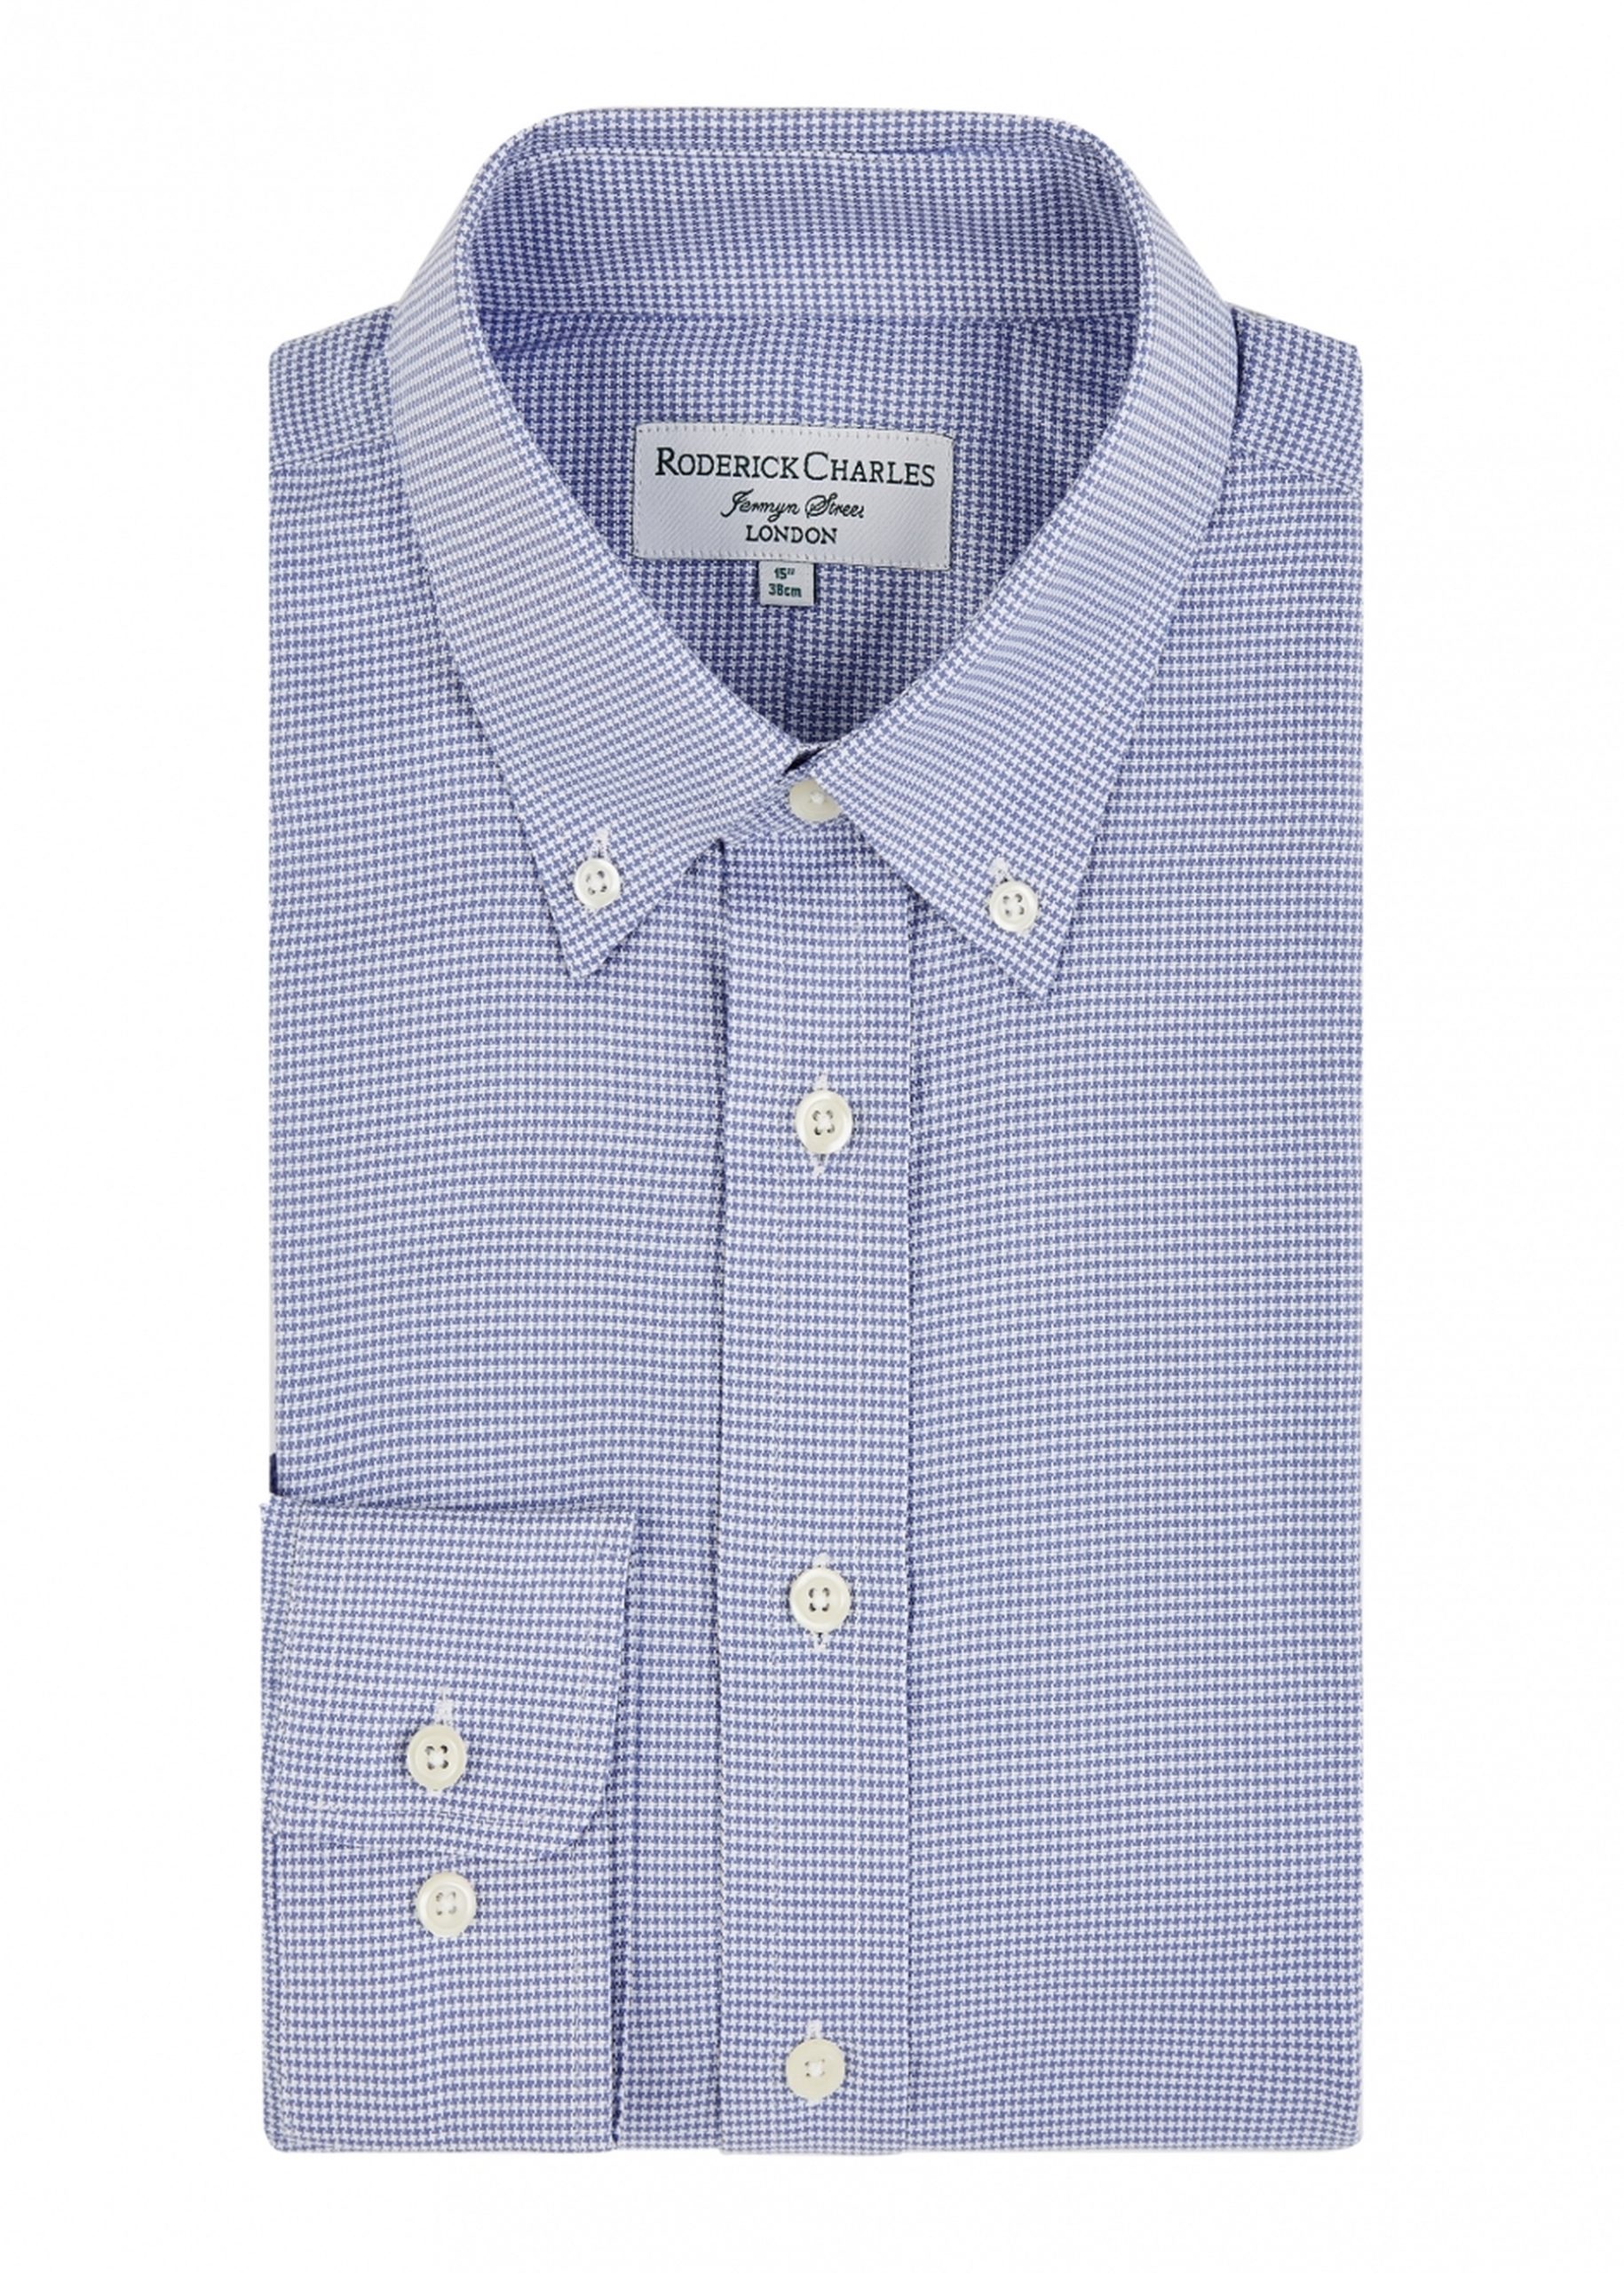 Roderick Charles blue button down shirt